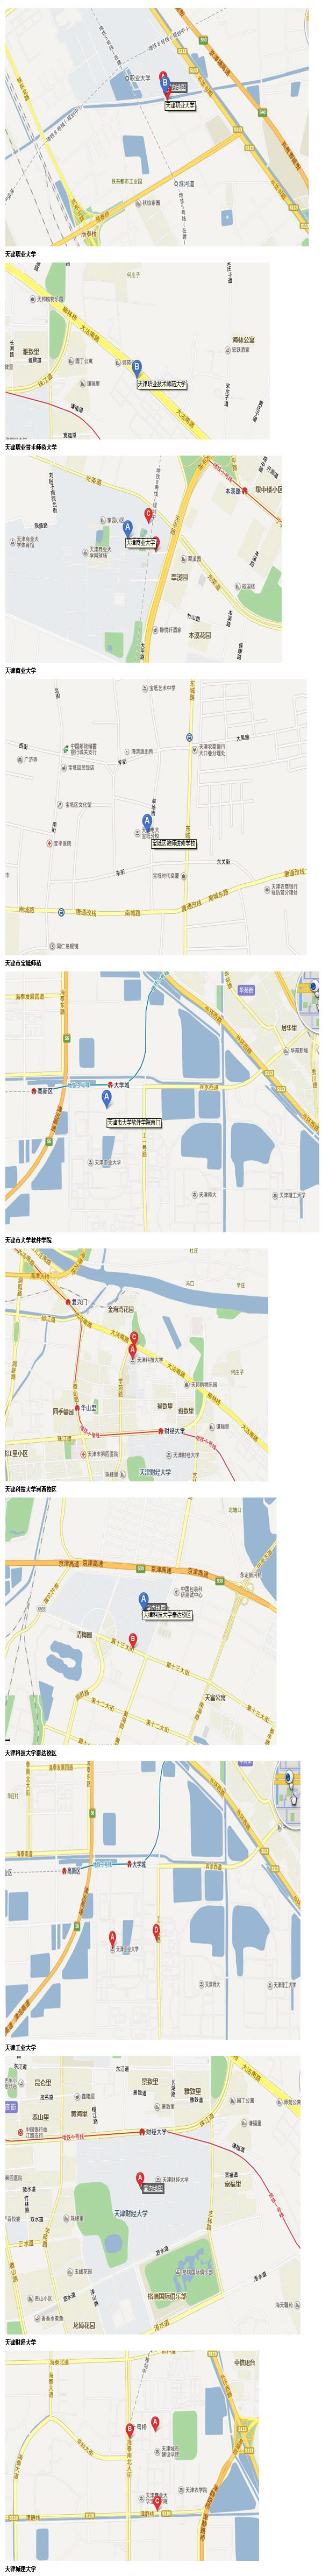 天津市2013年初级会计职称考试考点方位图